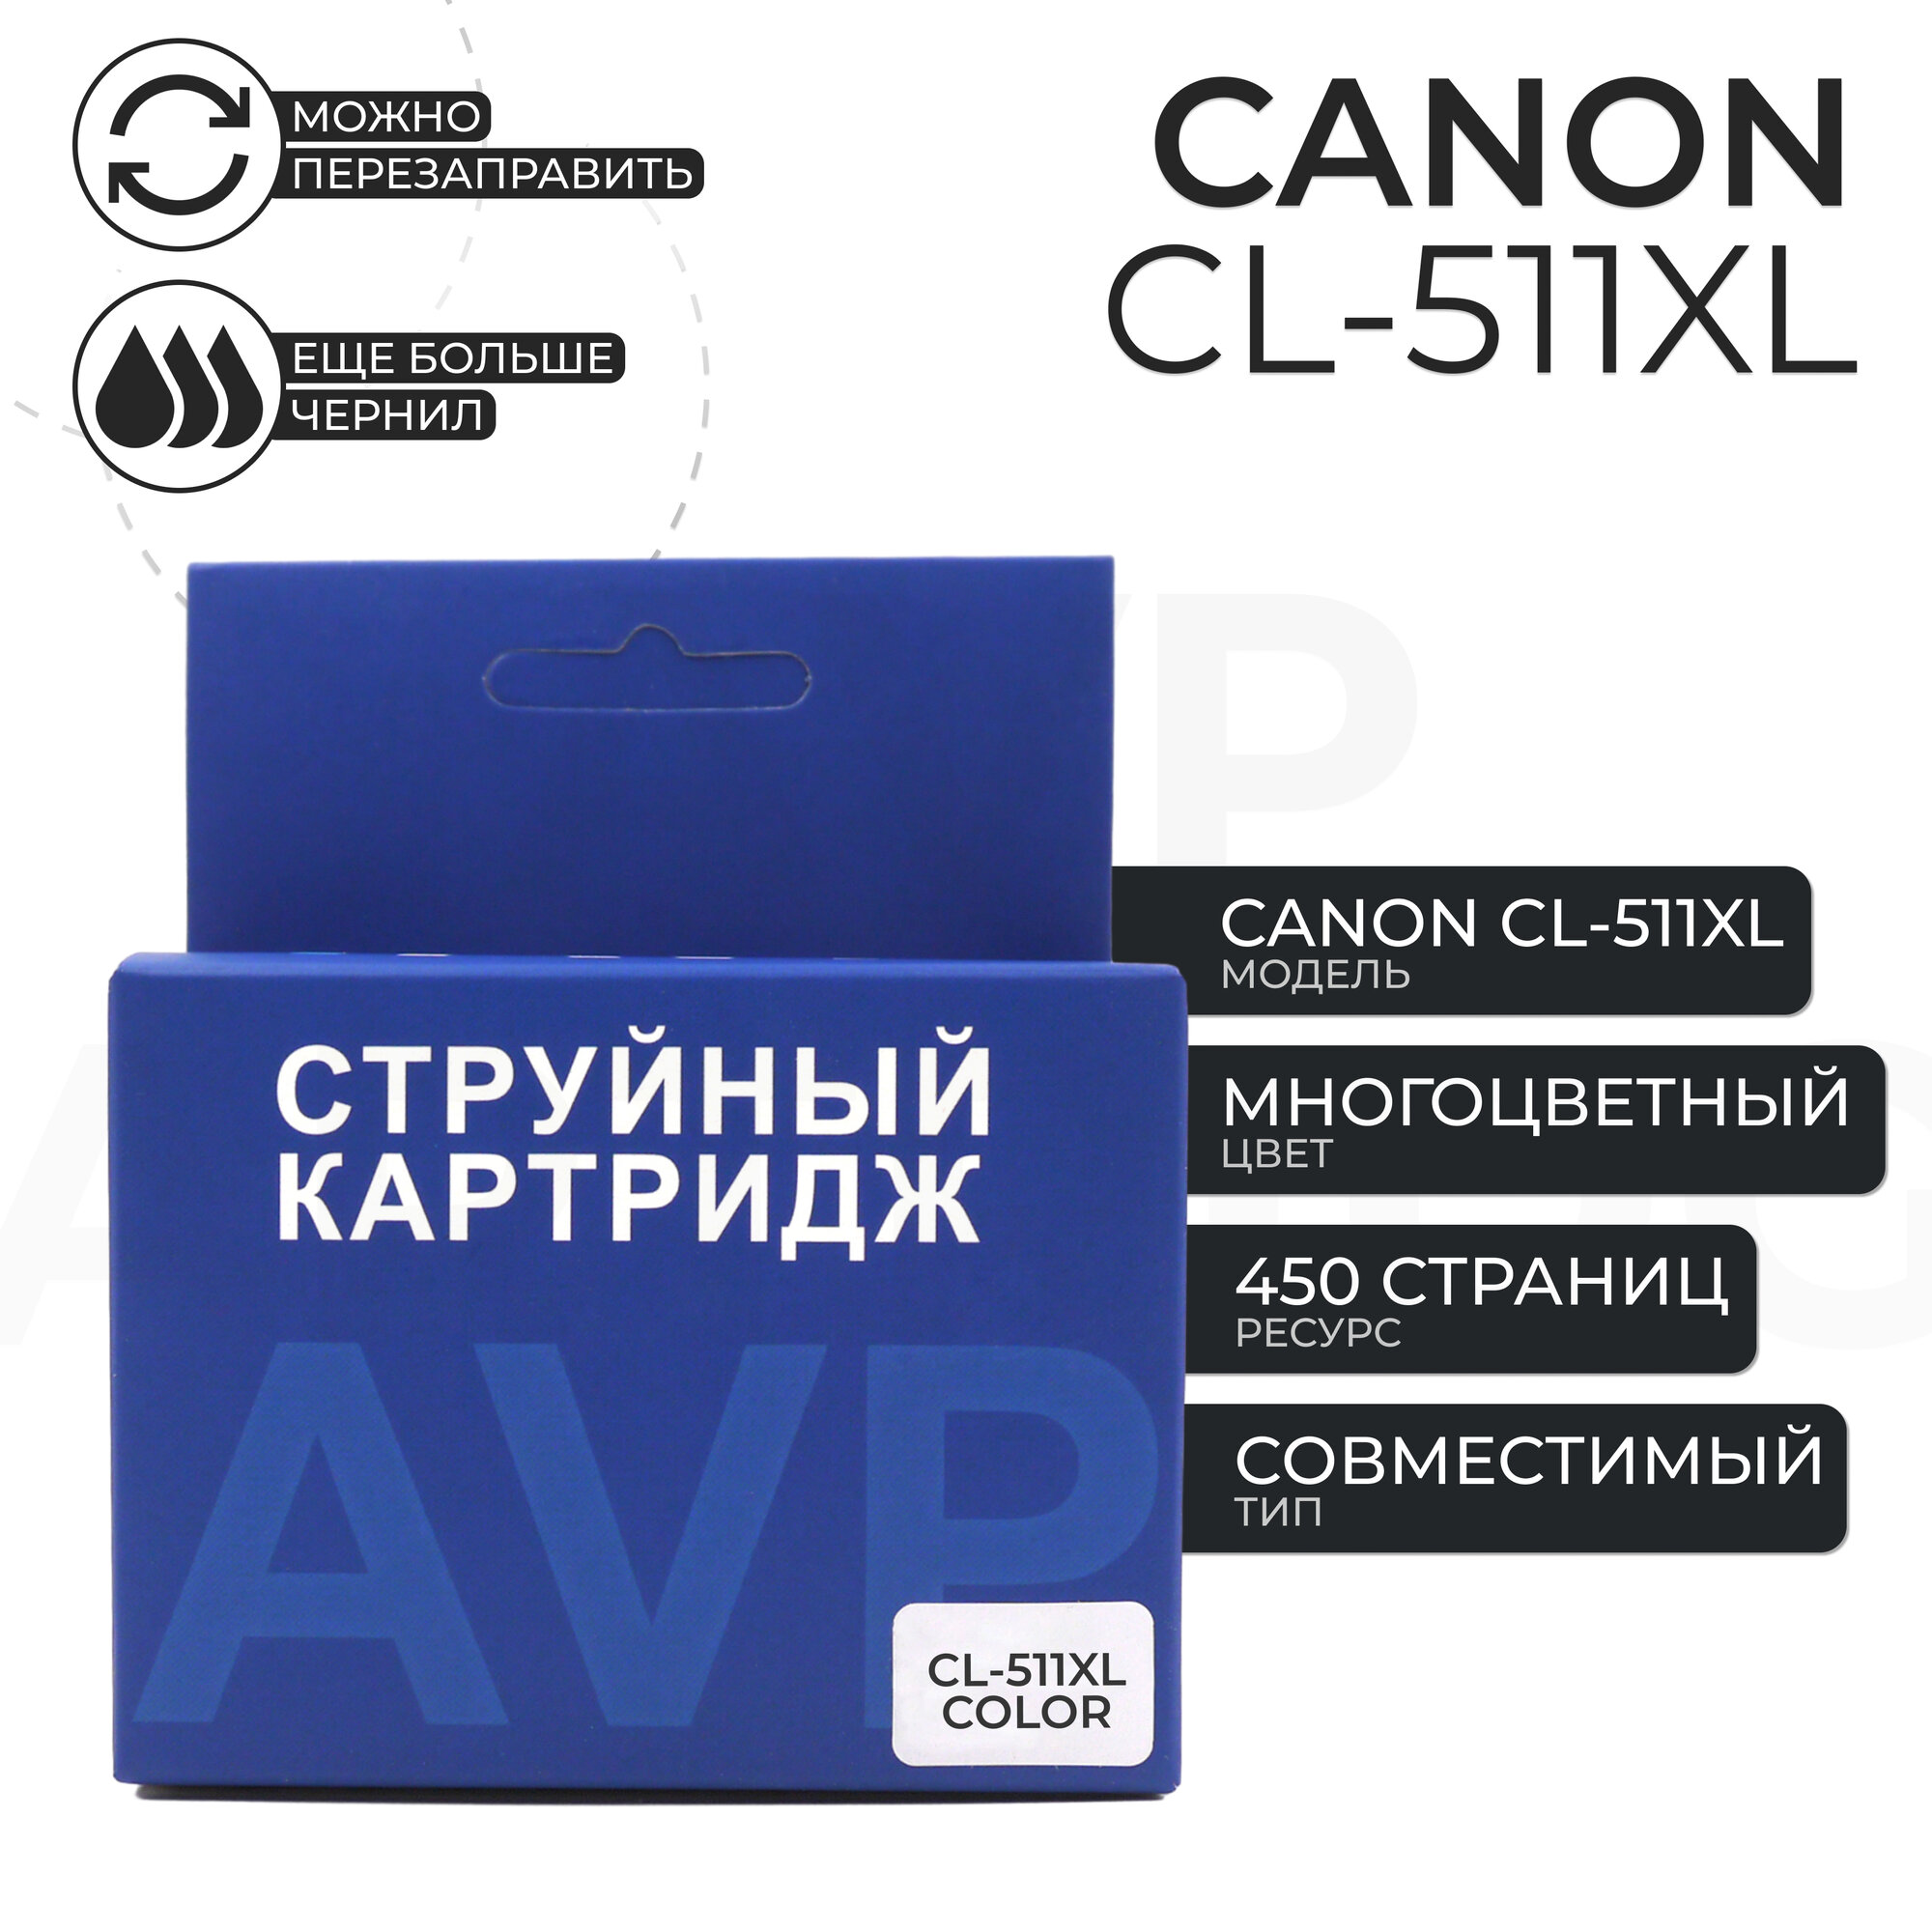 Картридж Canon CL-511 XL (CL-511XL) цветной